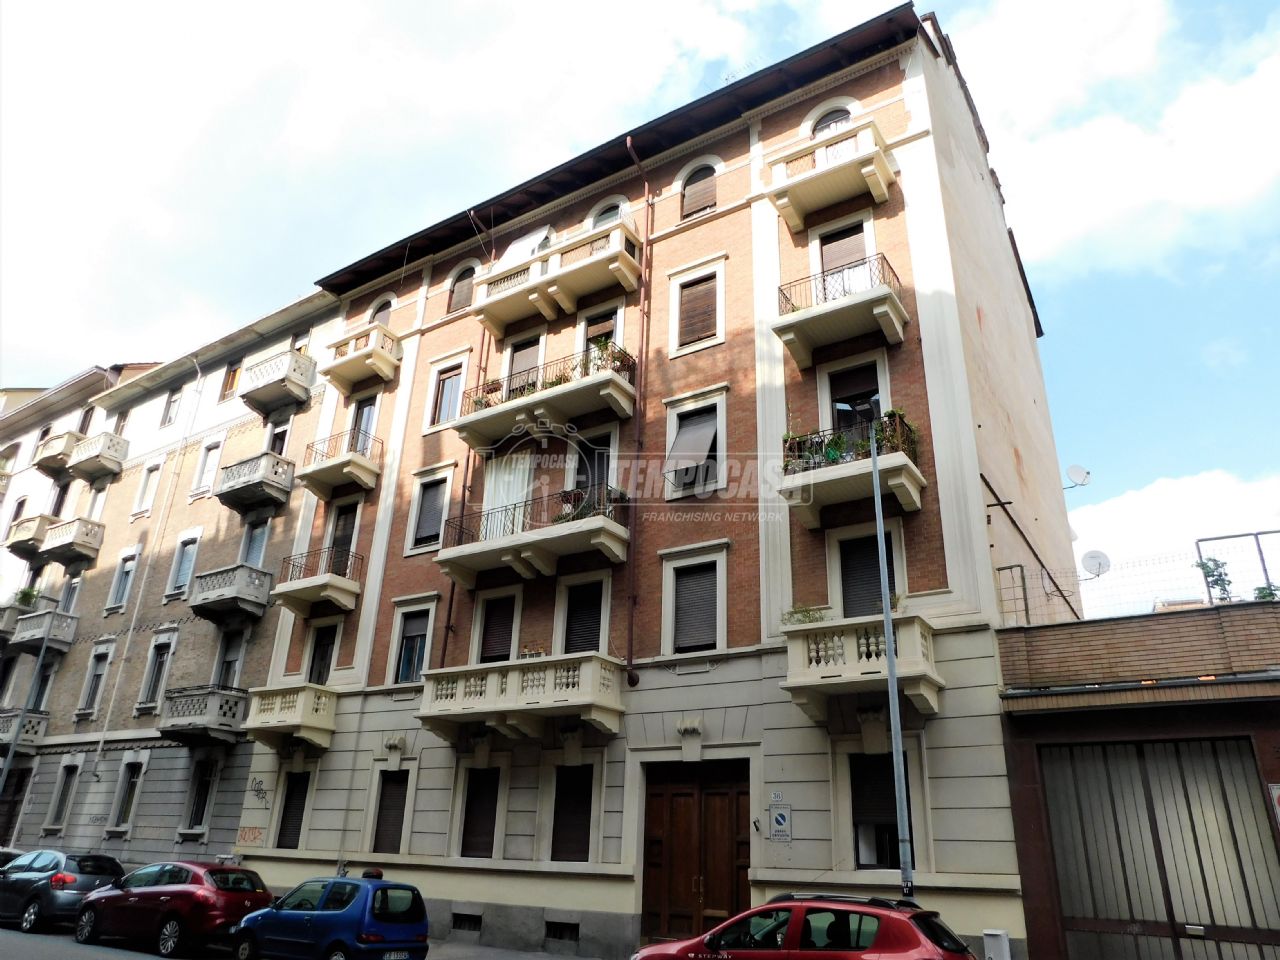 Mansarda Torino - Campidoglio, affitto e vendita Mansarda ...